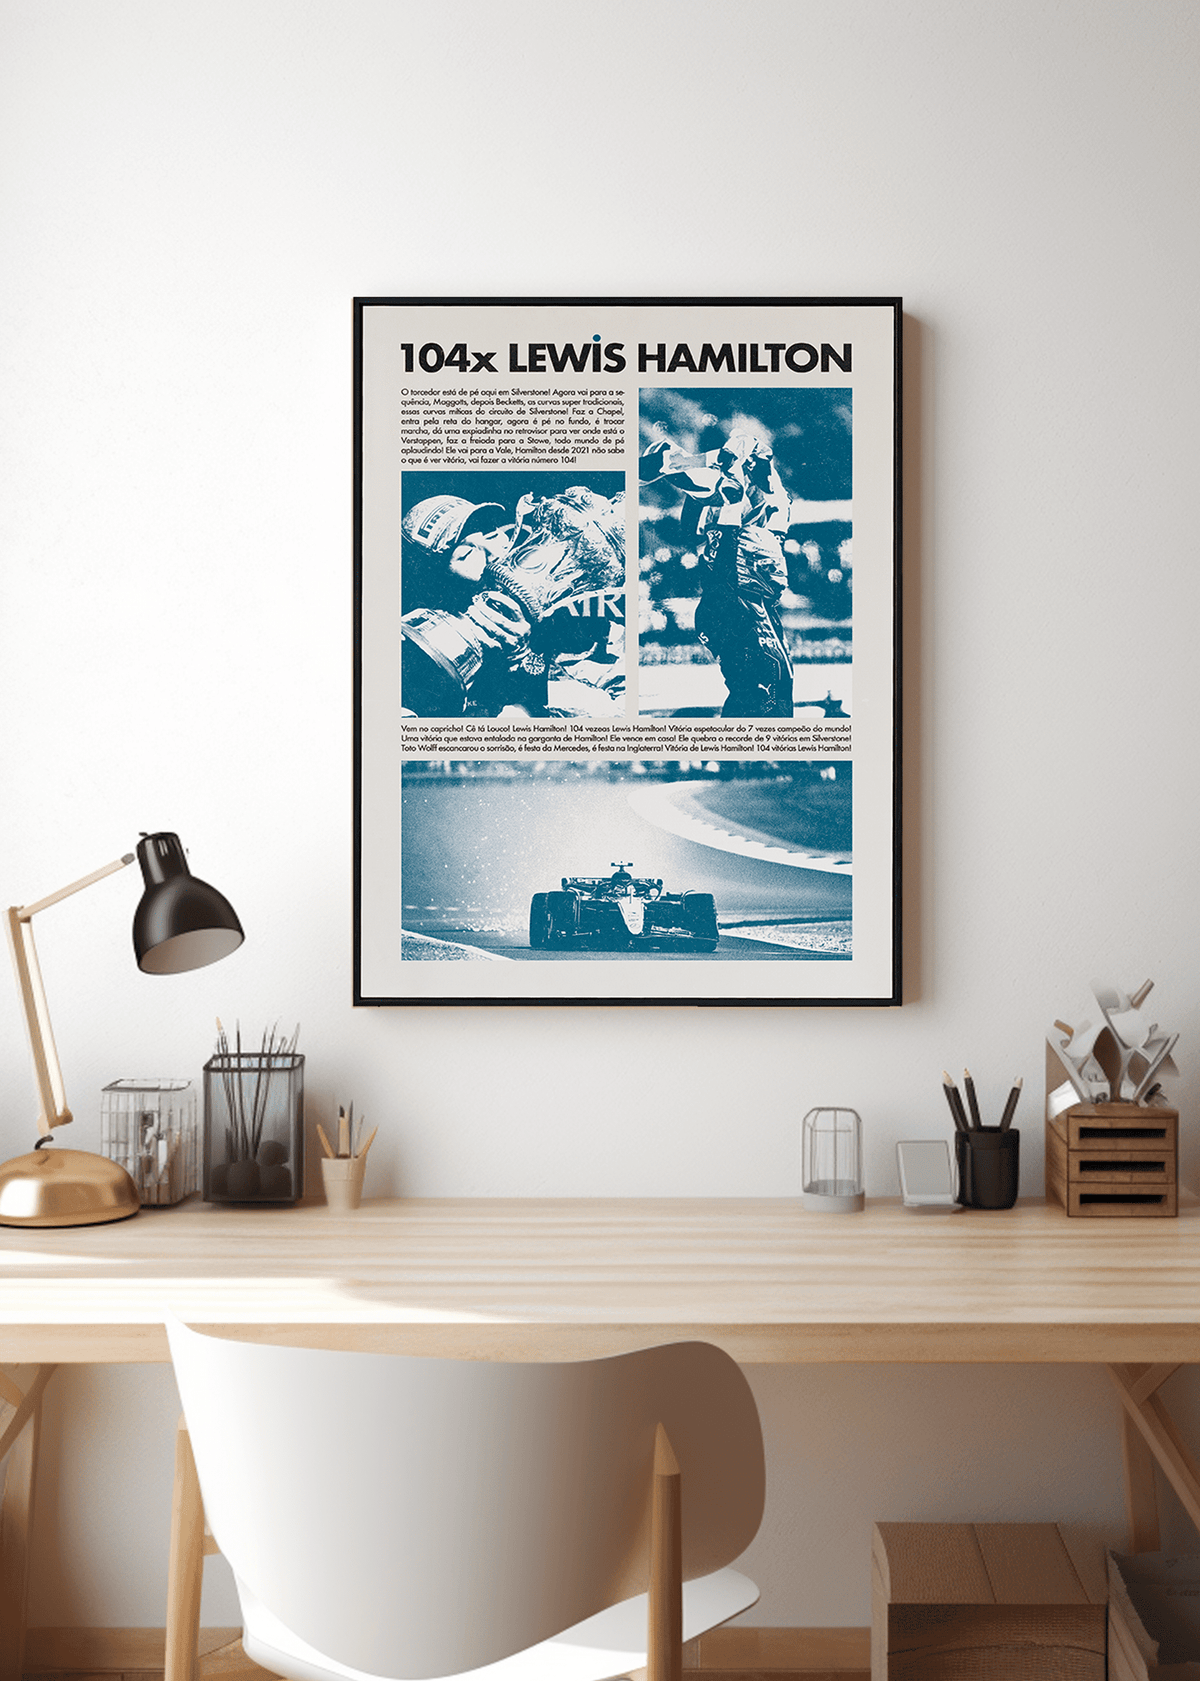 Quadro Lewis Hamilton 104x Silverstone